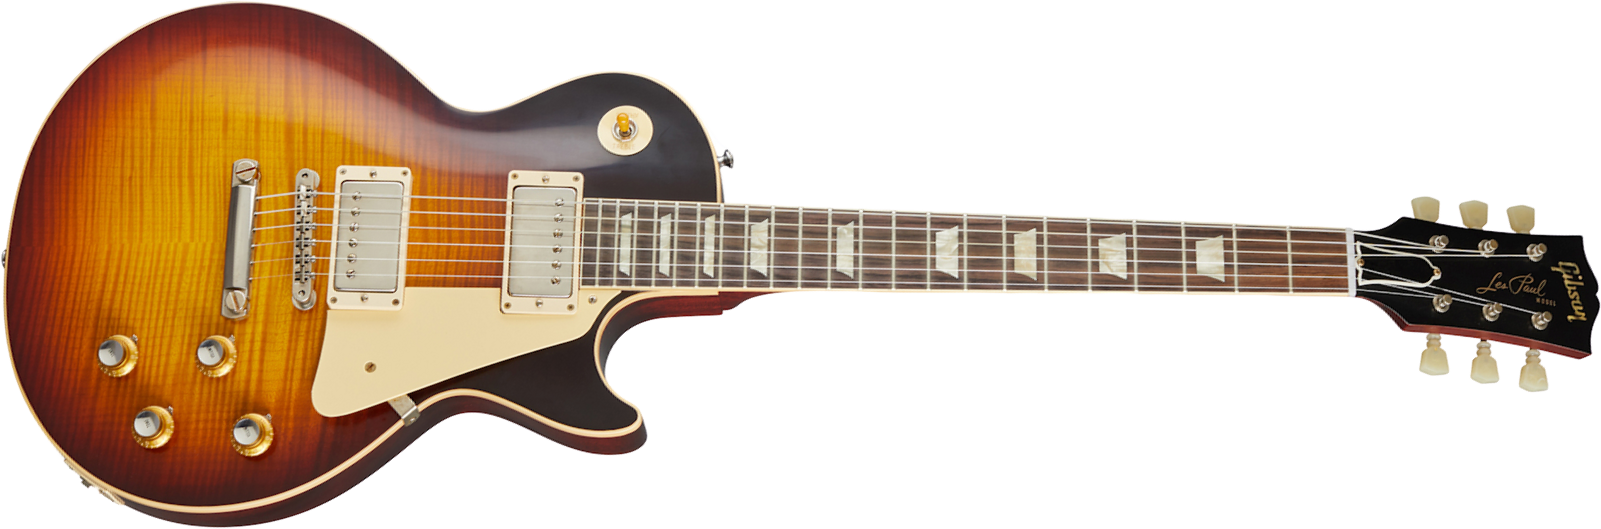 Gibson Custom Shop Les Paul Standard 1960 V3 60th Anniversary 2h Ht Rw - Vos Washed Bourbon Burst - Guitare Électrique Single Cut - Main picture